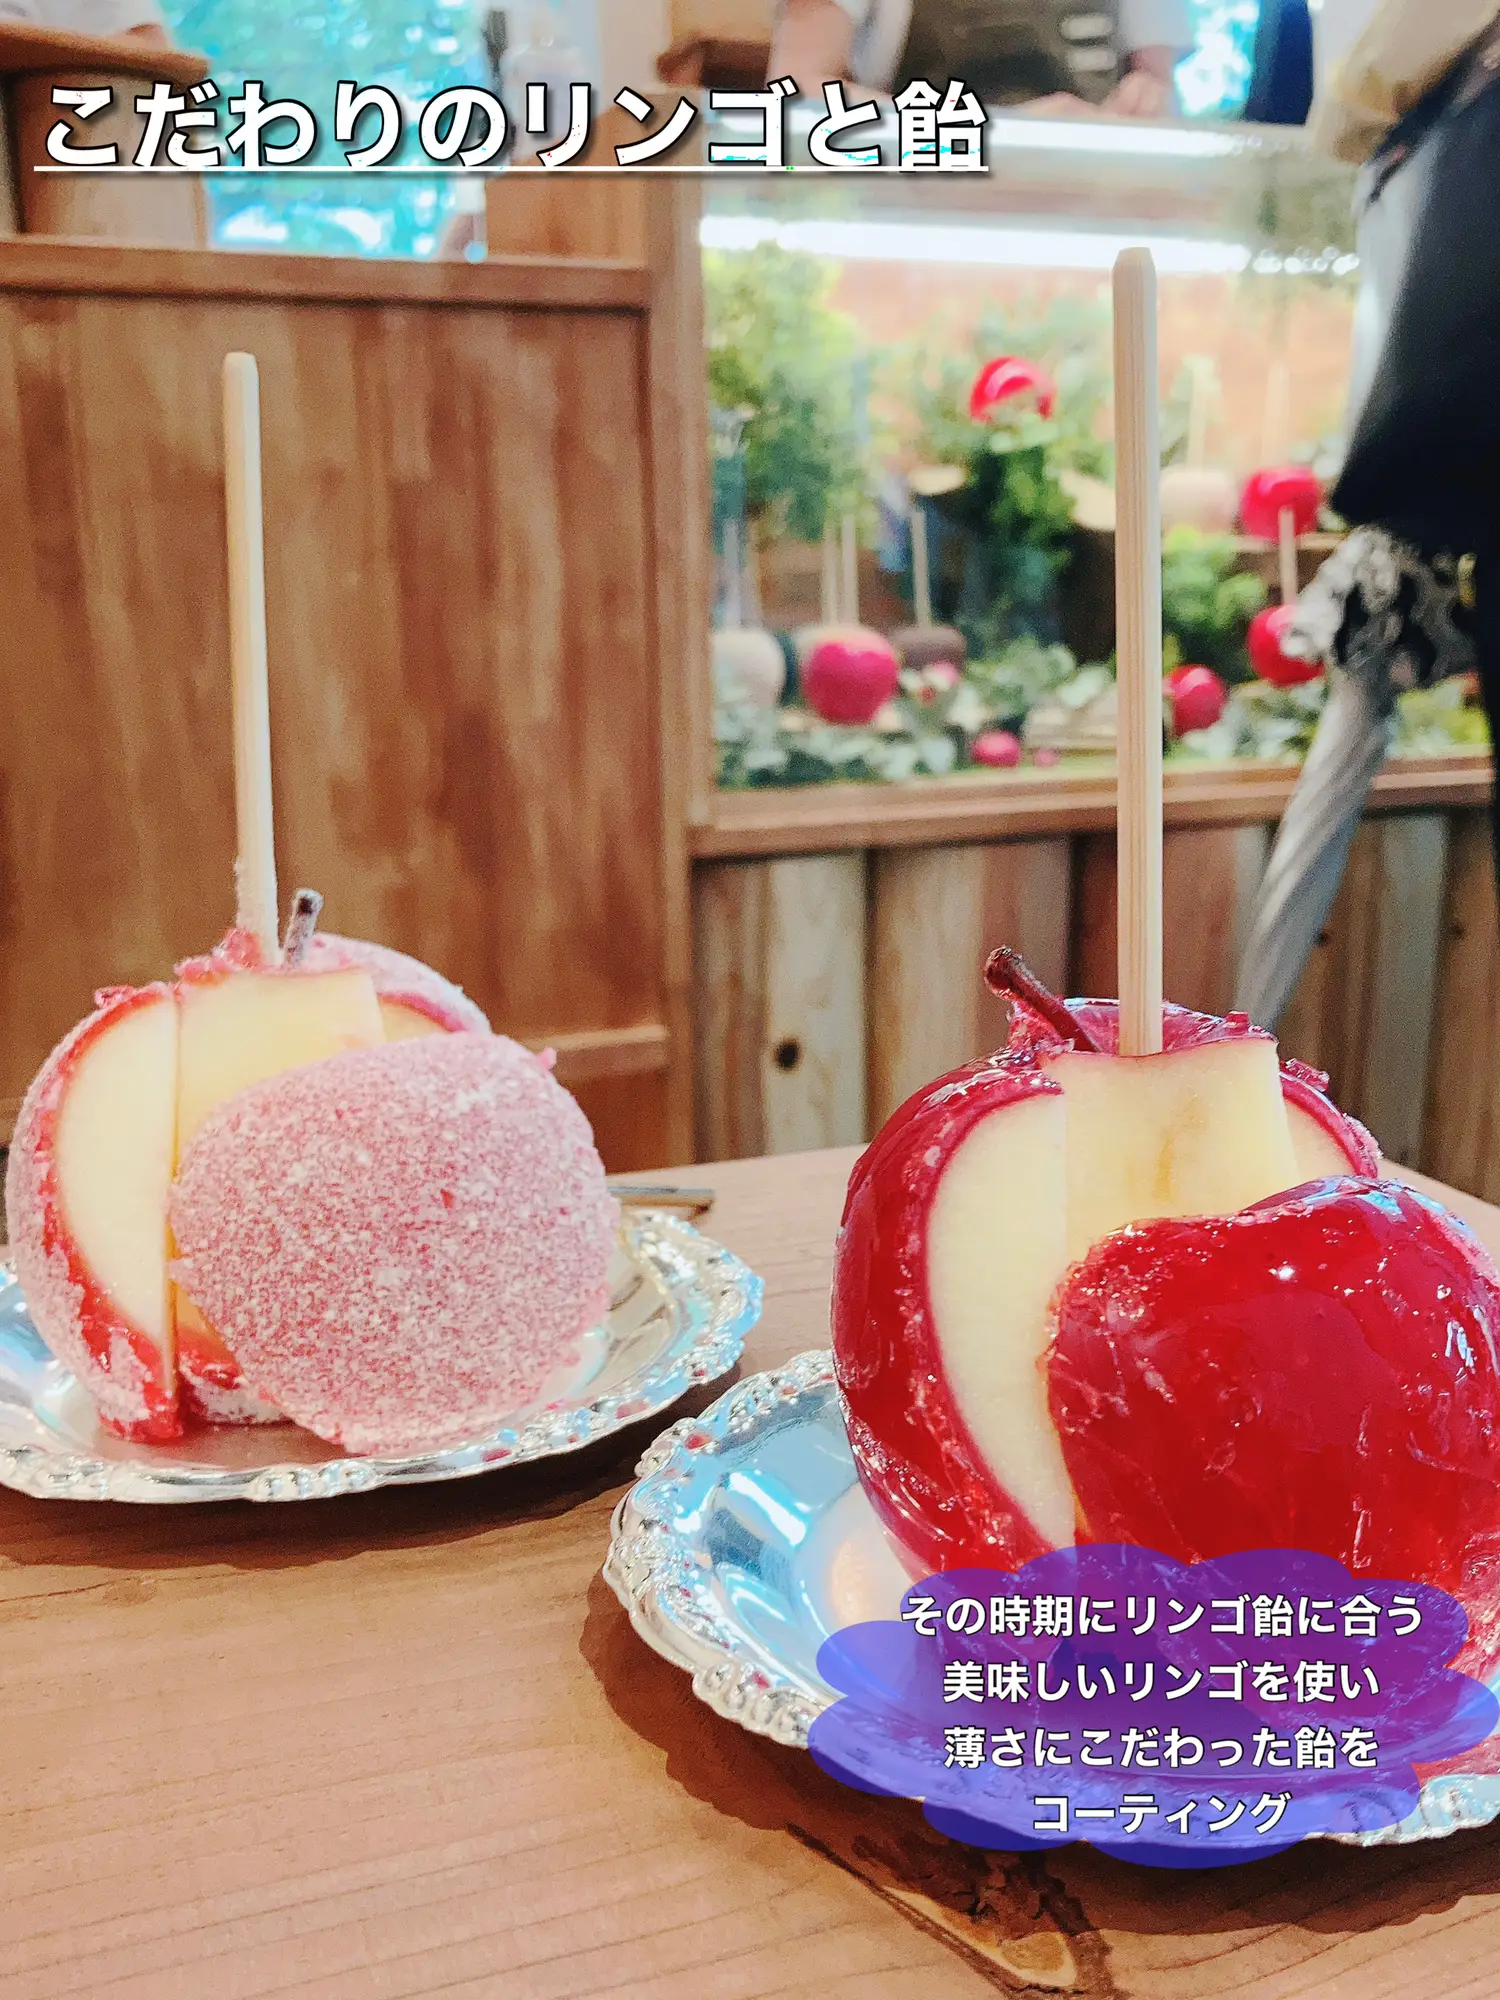 キャンディアップル名古屋 - Lemon8検索